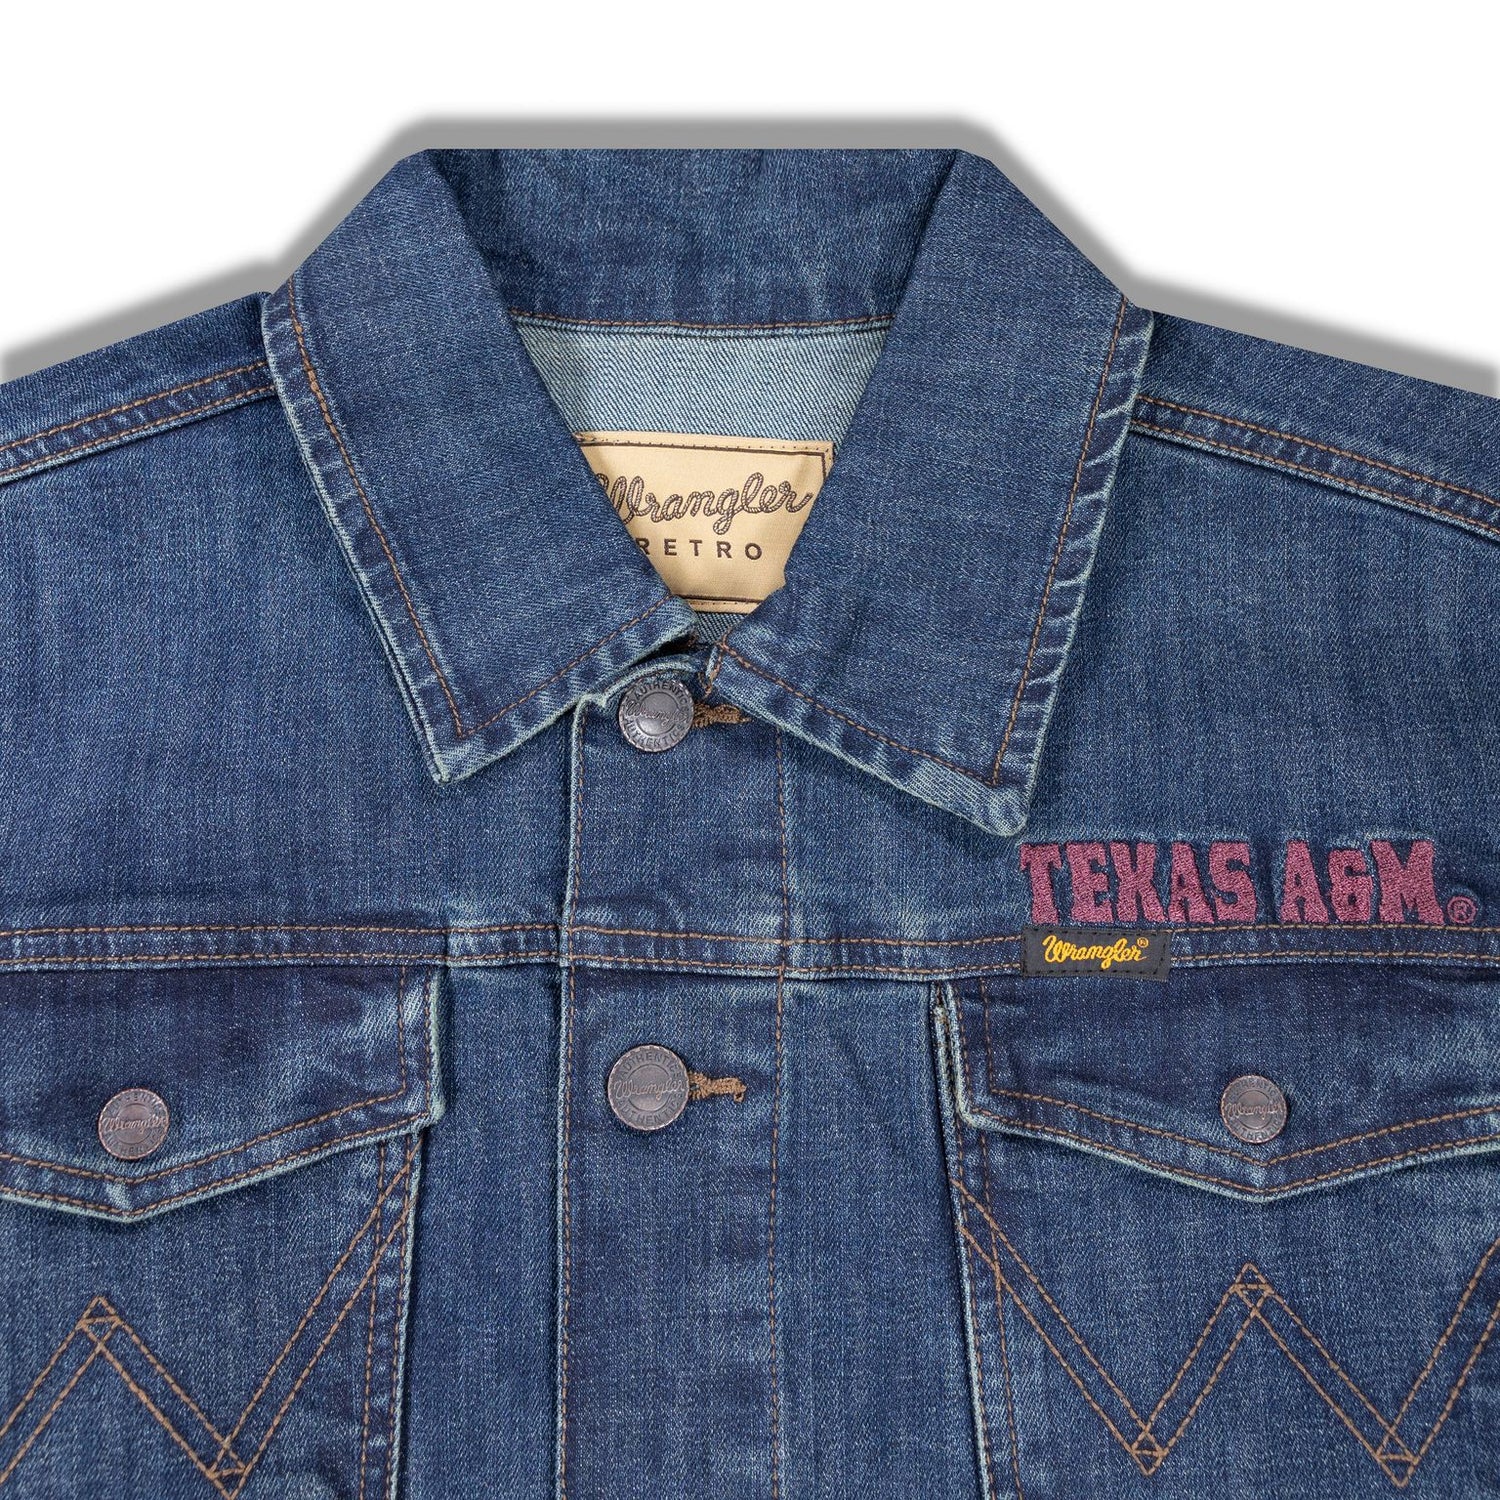 Texas A&M Wrangler Retro Men's Denim Jacket